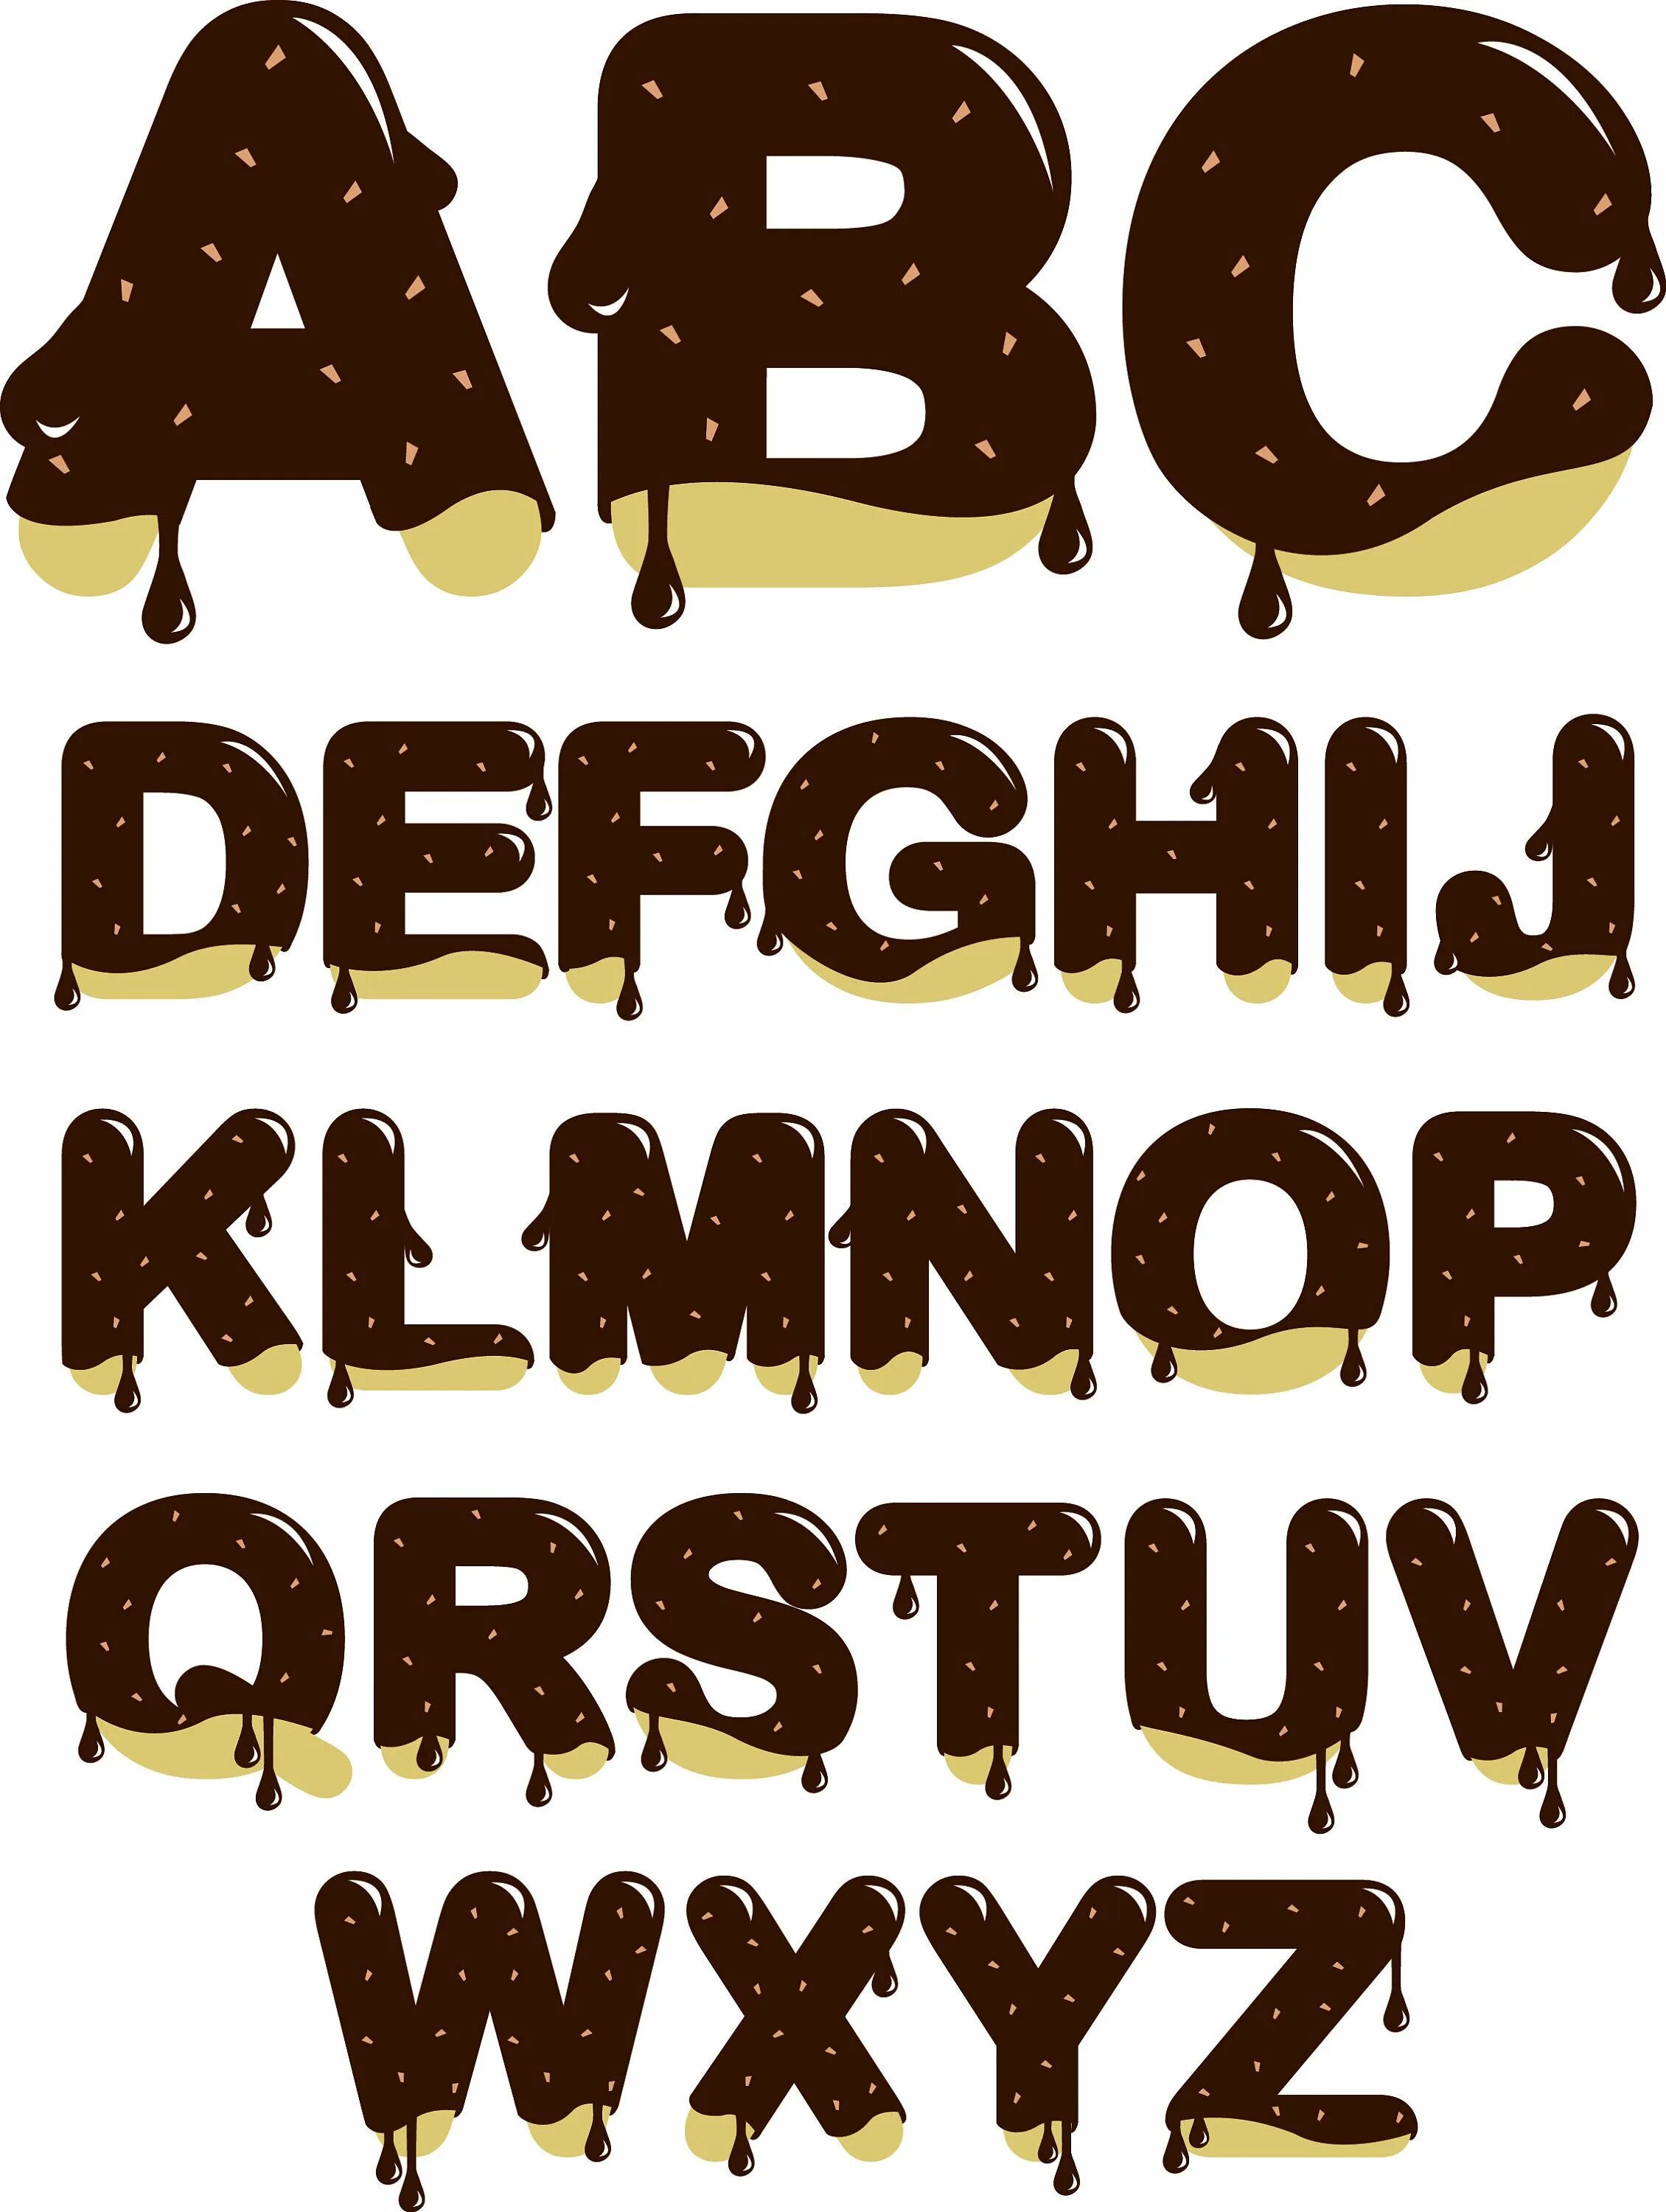 Шрифт choco. Шоколадный шрифт. Шрифт из шоколада. Шоколадный шрифт русский. Шоколадные буквы.